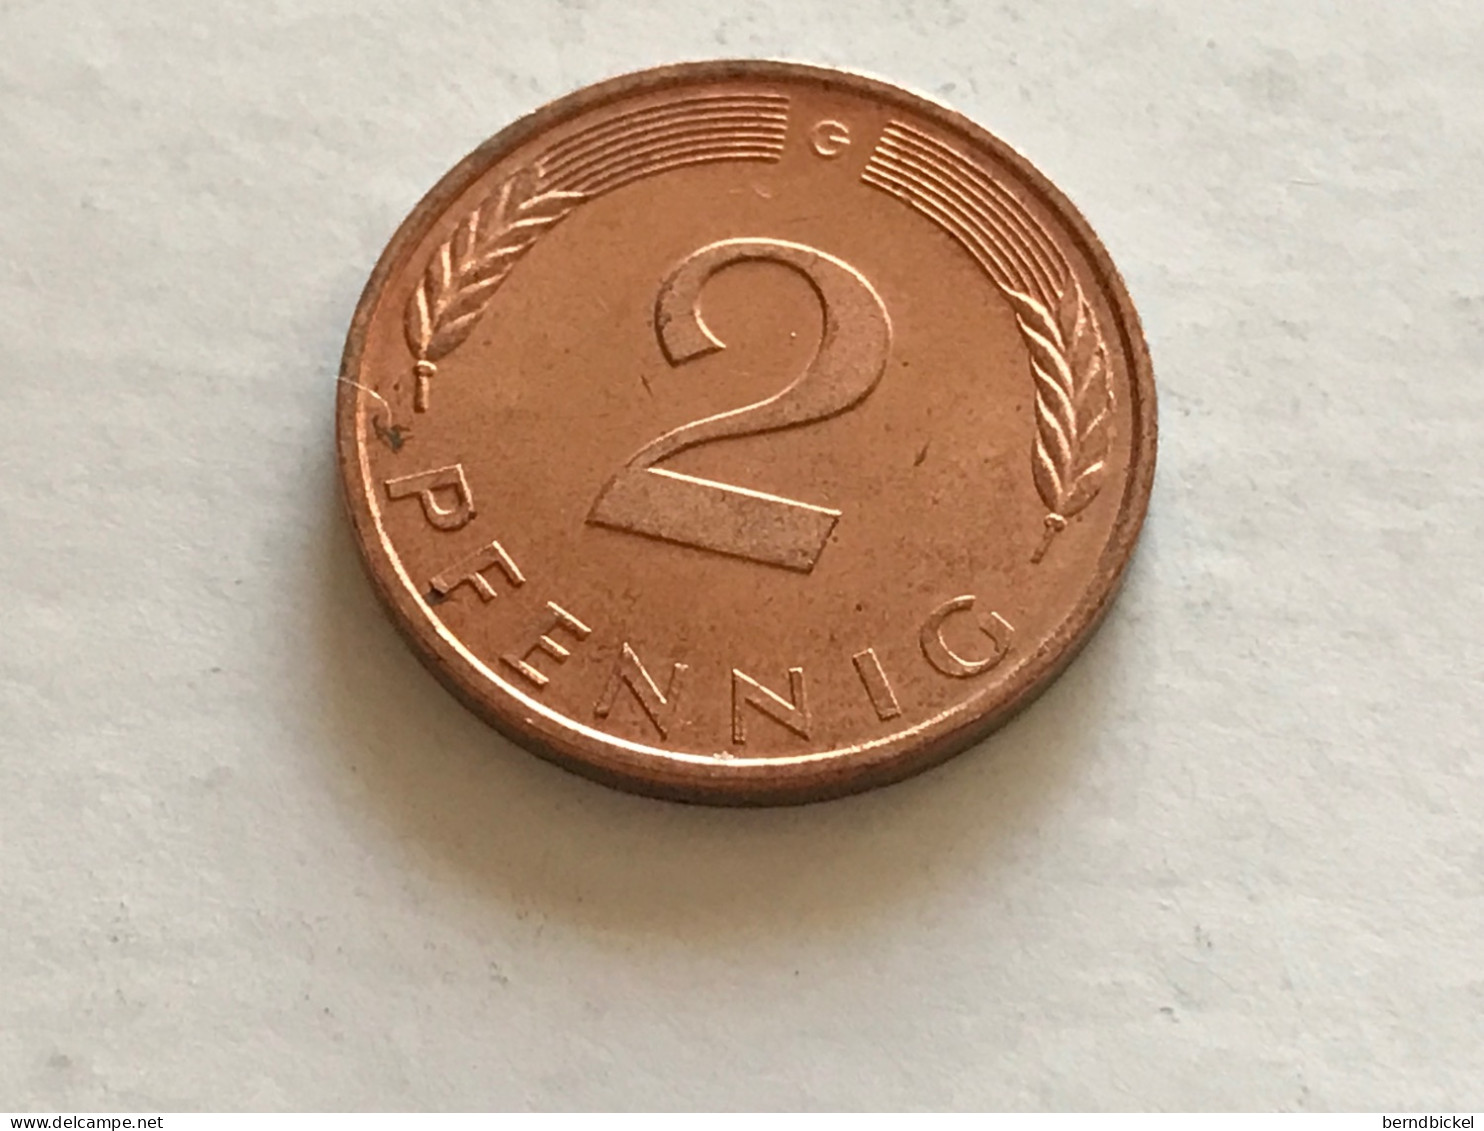 Münze Münzen Umlaufmünze Deutschland 2 Pfennig 1991 Münzzeichen G - 2 Pfennig